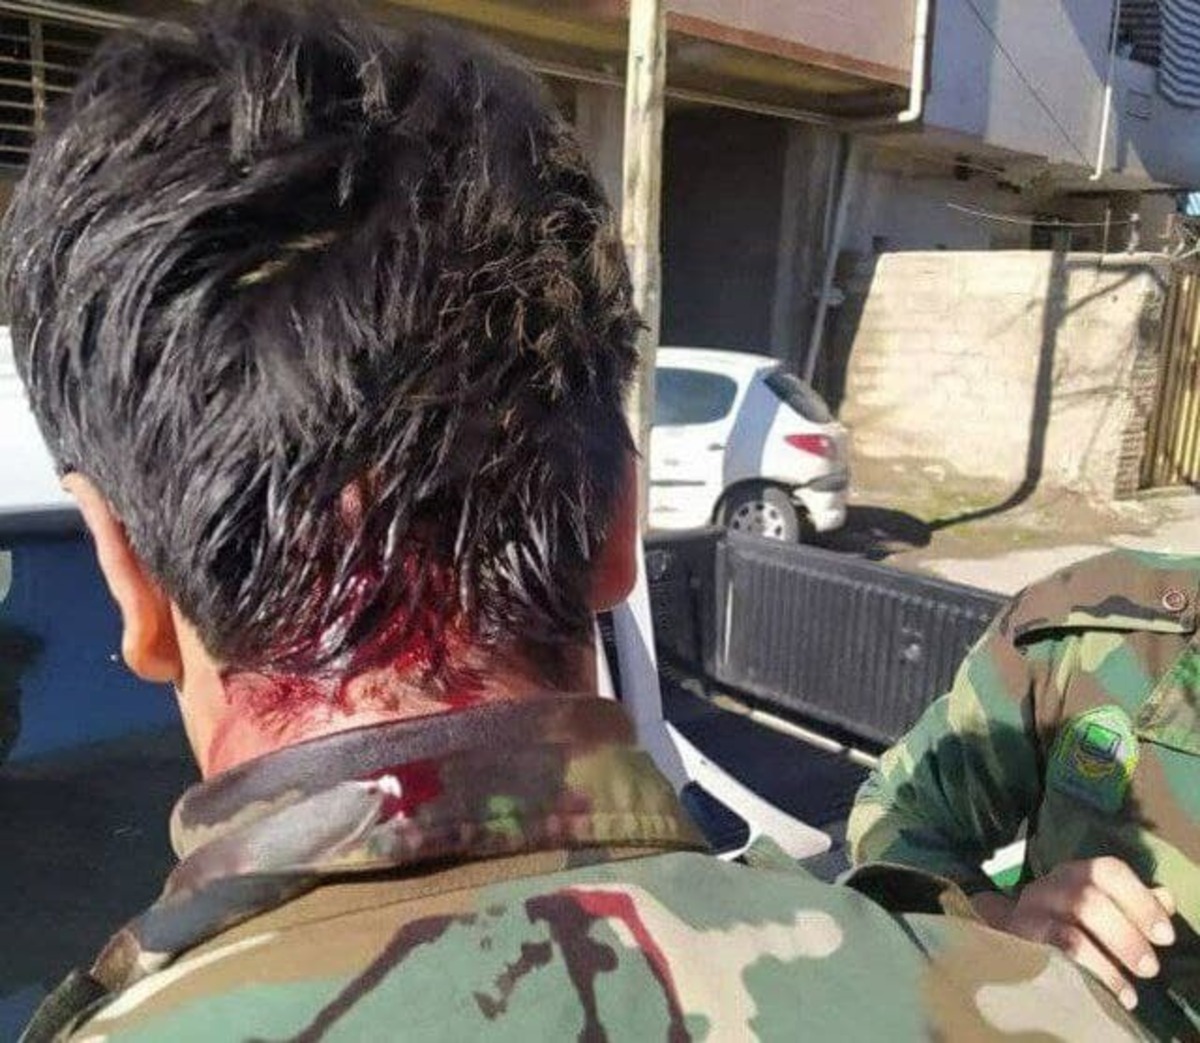 زخمی شدن یک جنگلبان با سلاح سرد در گلستان